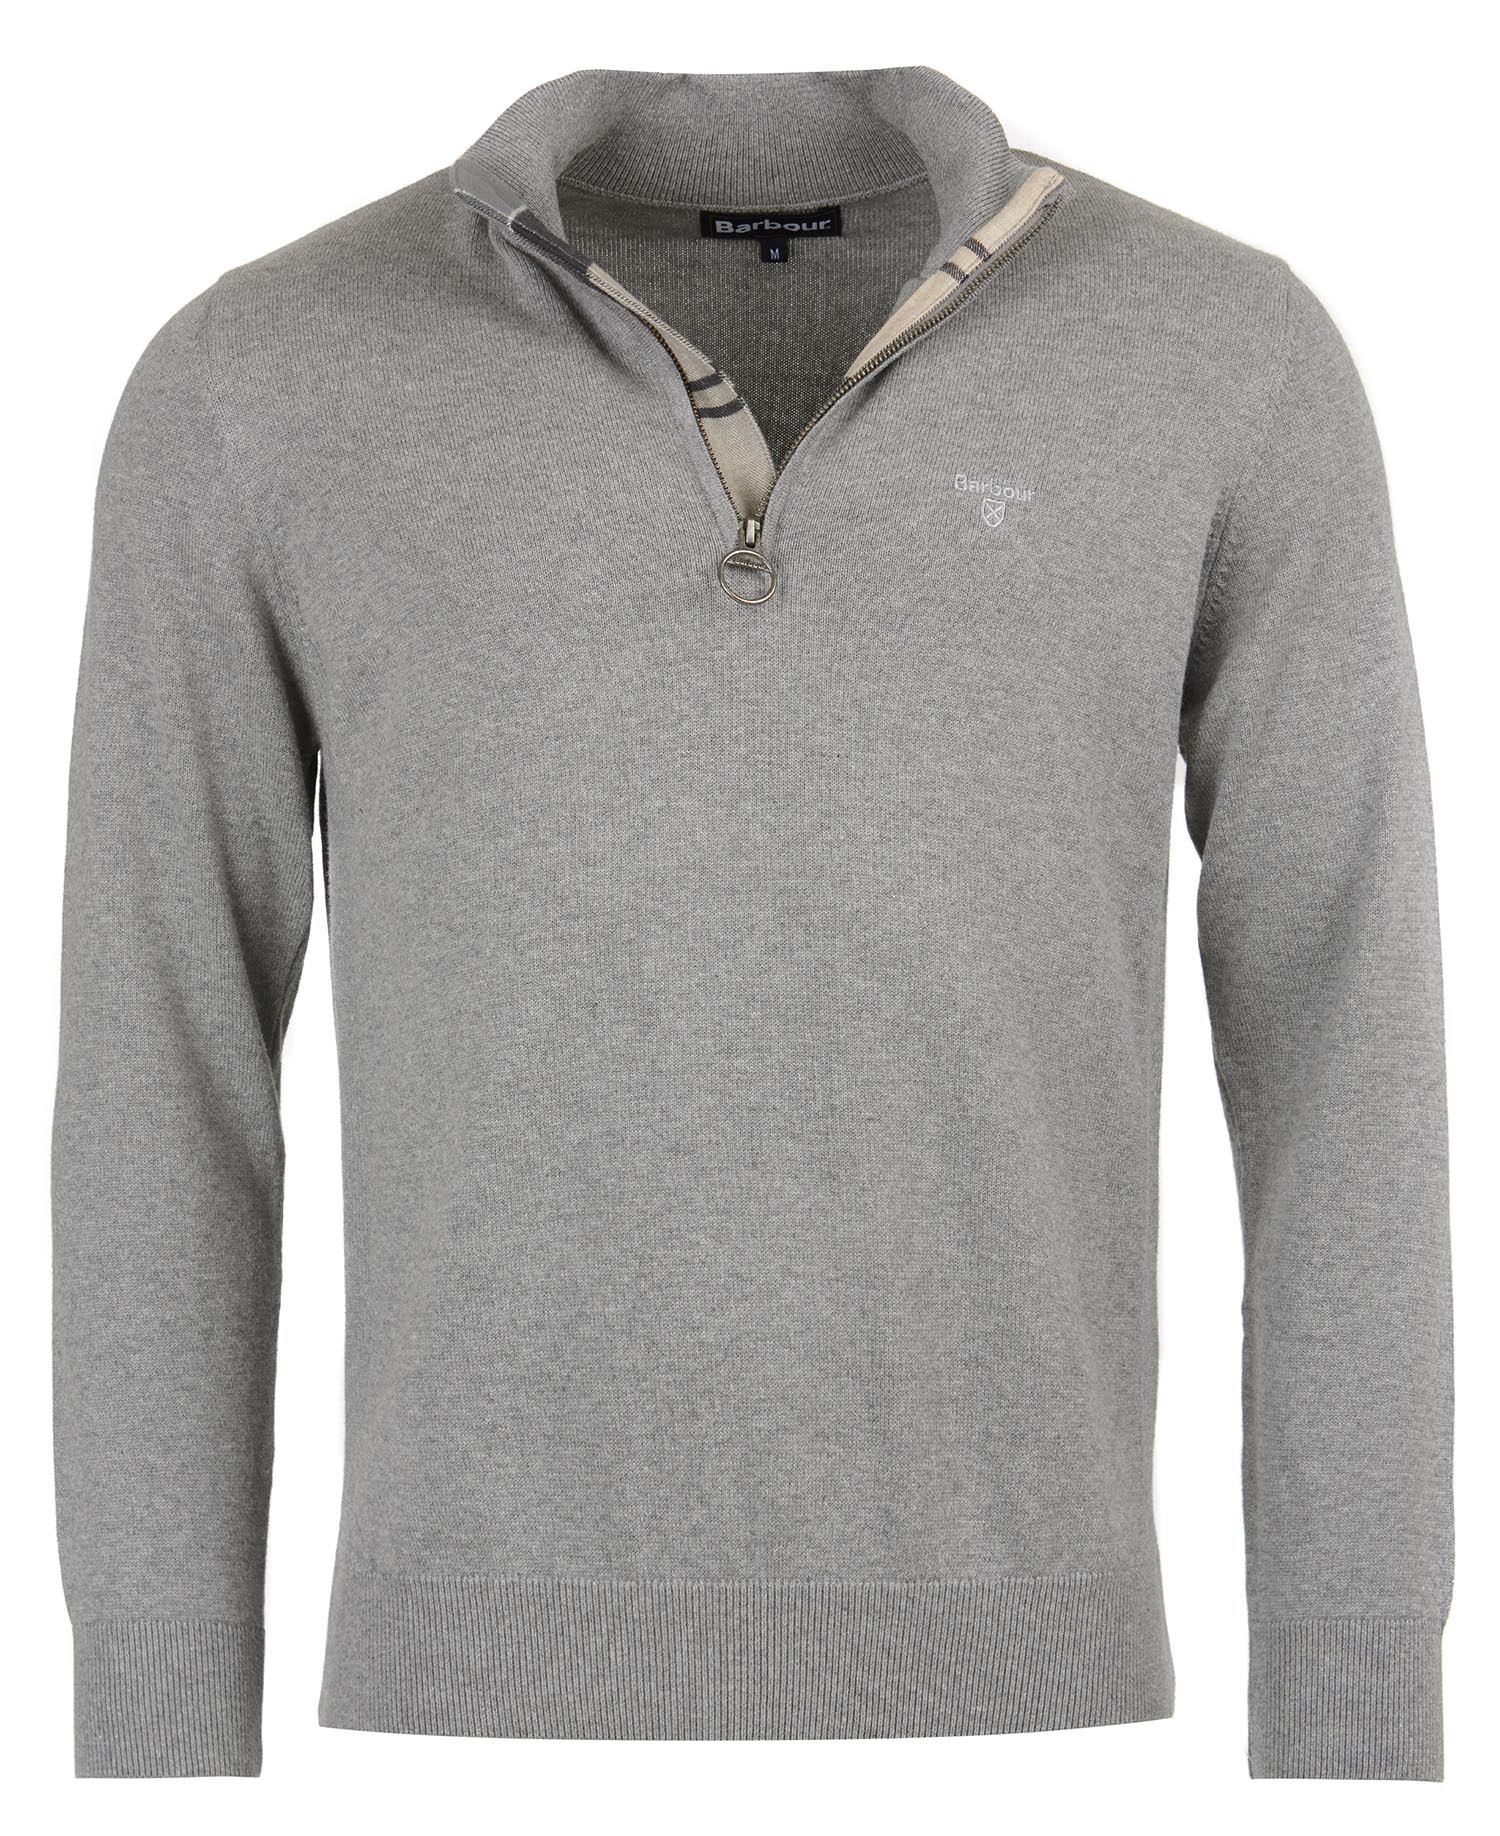 Barbour Cotton Half Zip Sweater in Grey 